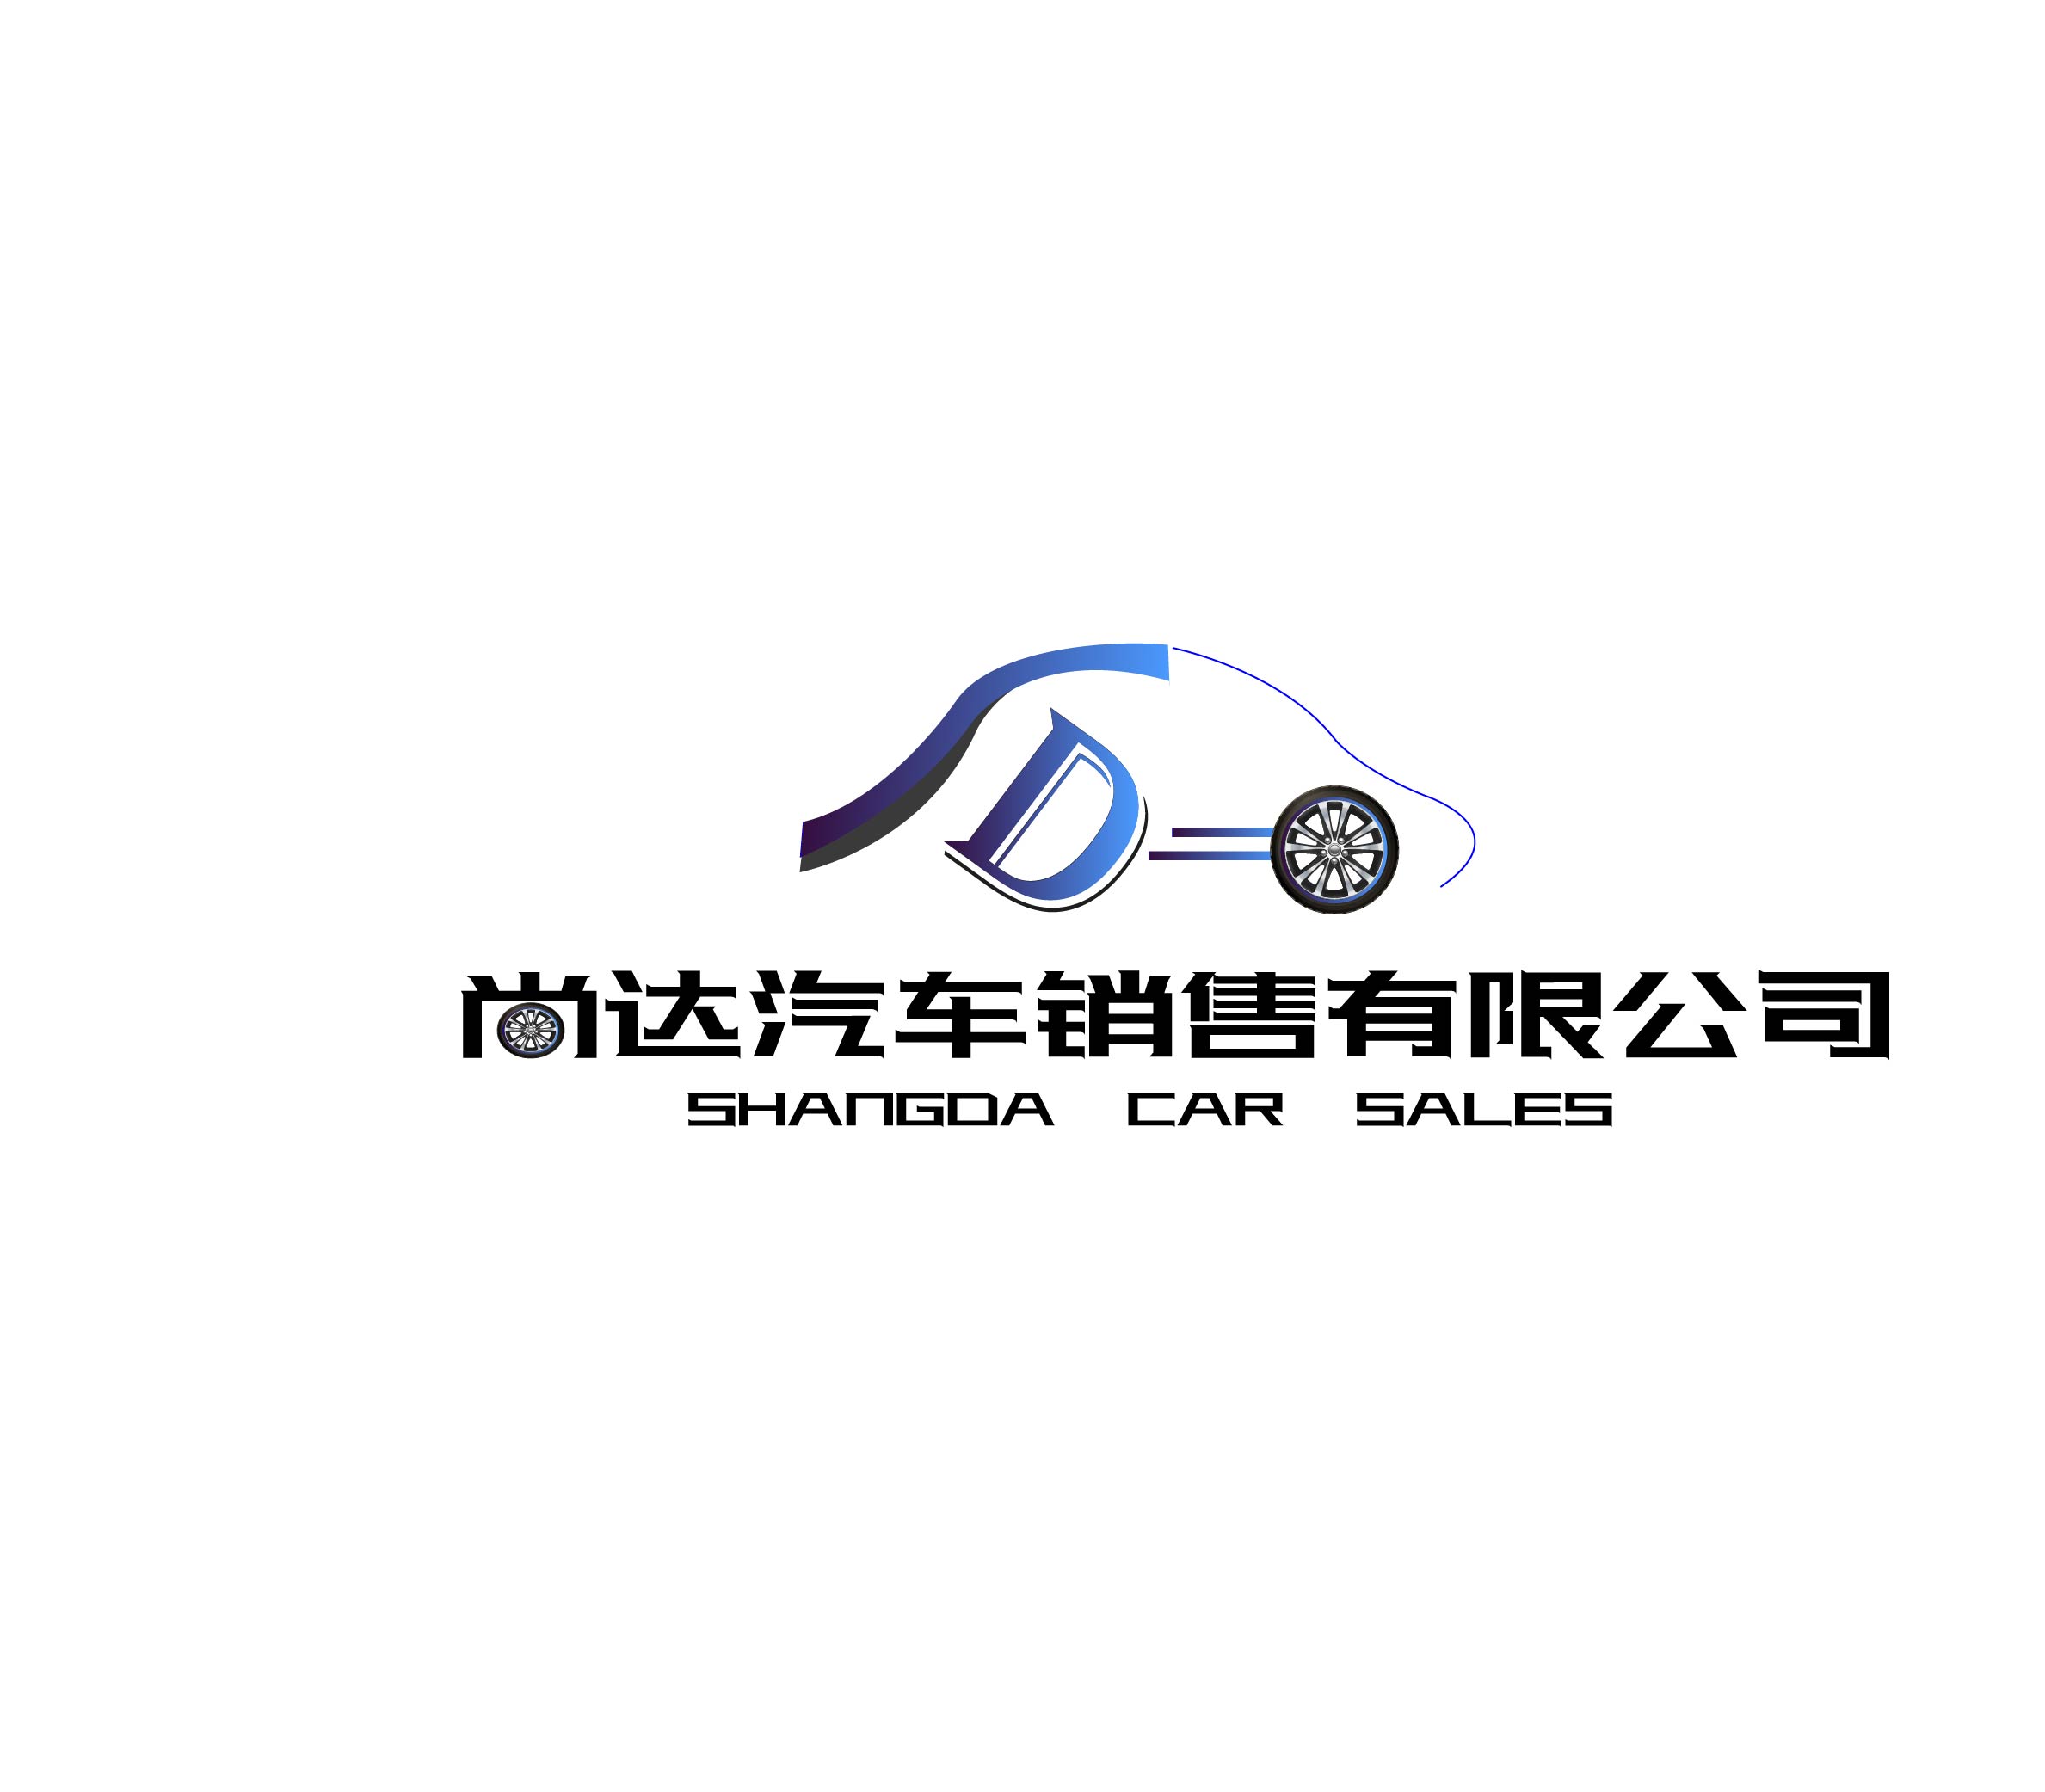 汽车销售公司logo/平面设计/vi设计/标志设计